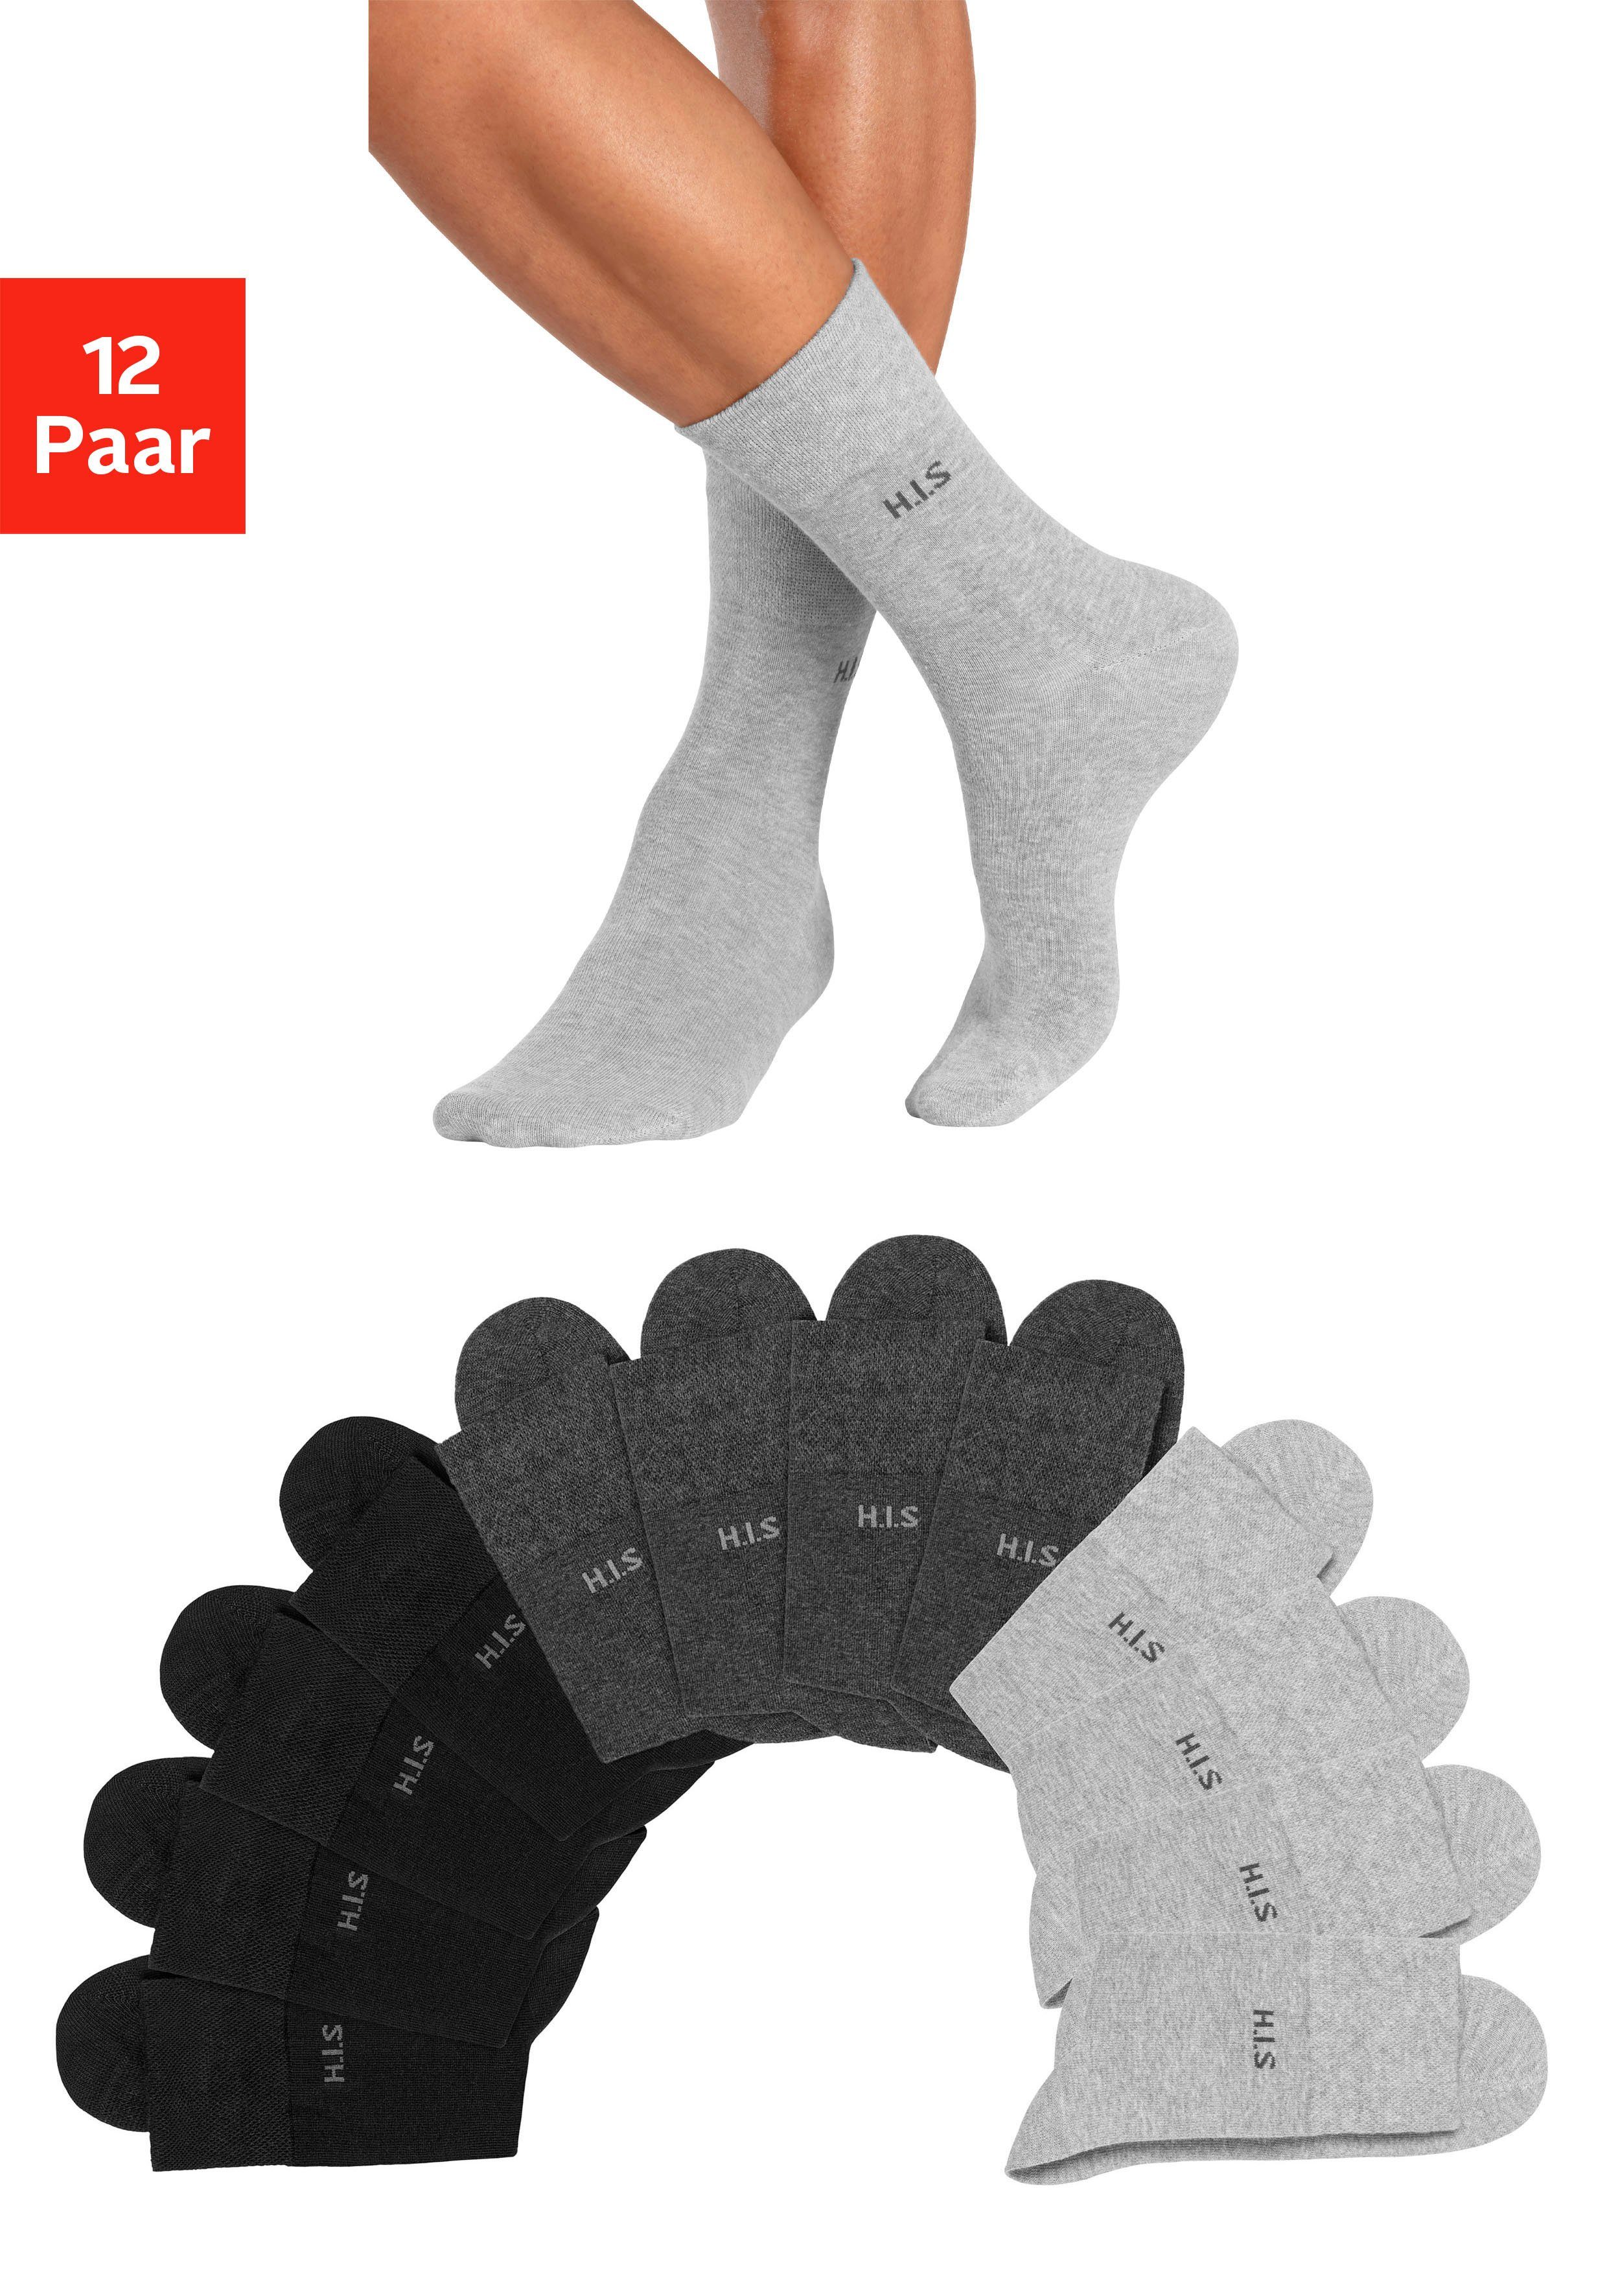 4x H.I.S Gummi Socken 4x 4x anthrazit-meliert, grau-meliert ohne (Packung, 12-Paar) einschneidendes schwarz,